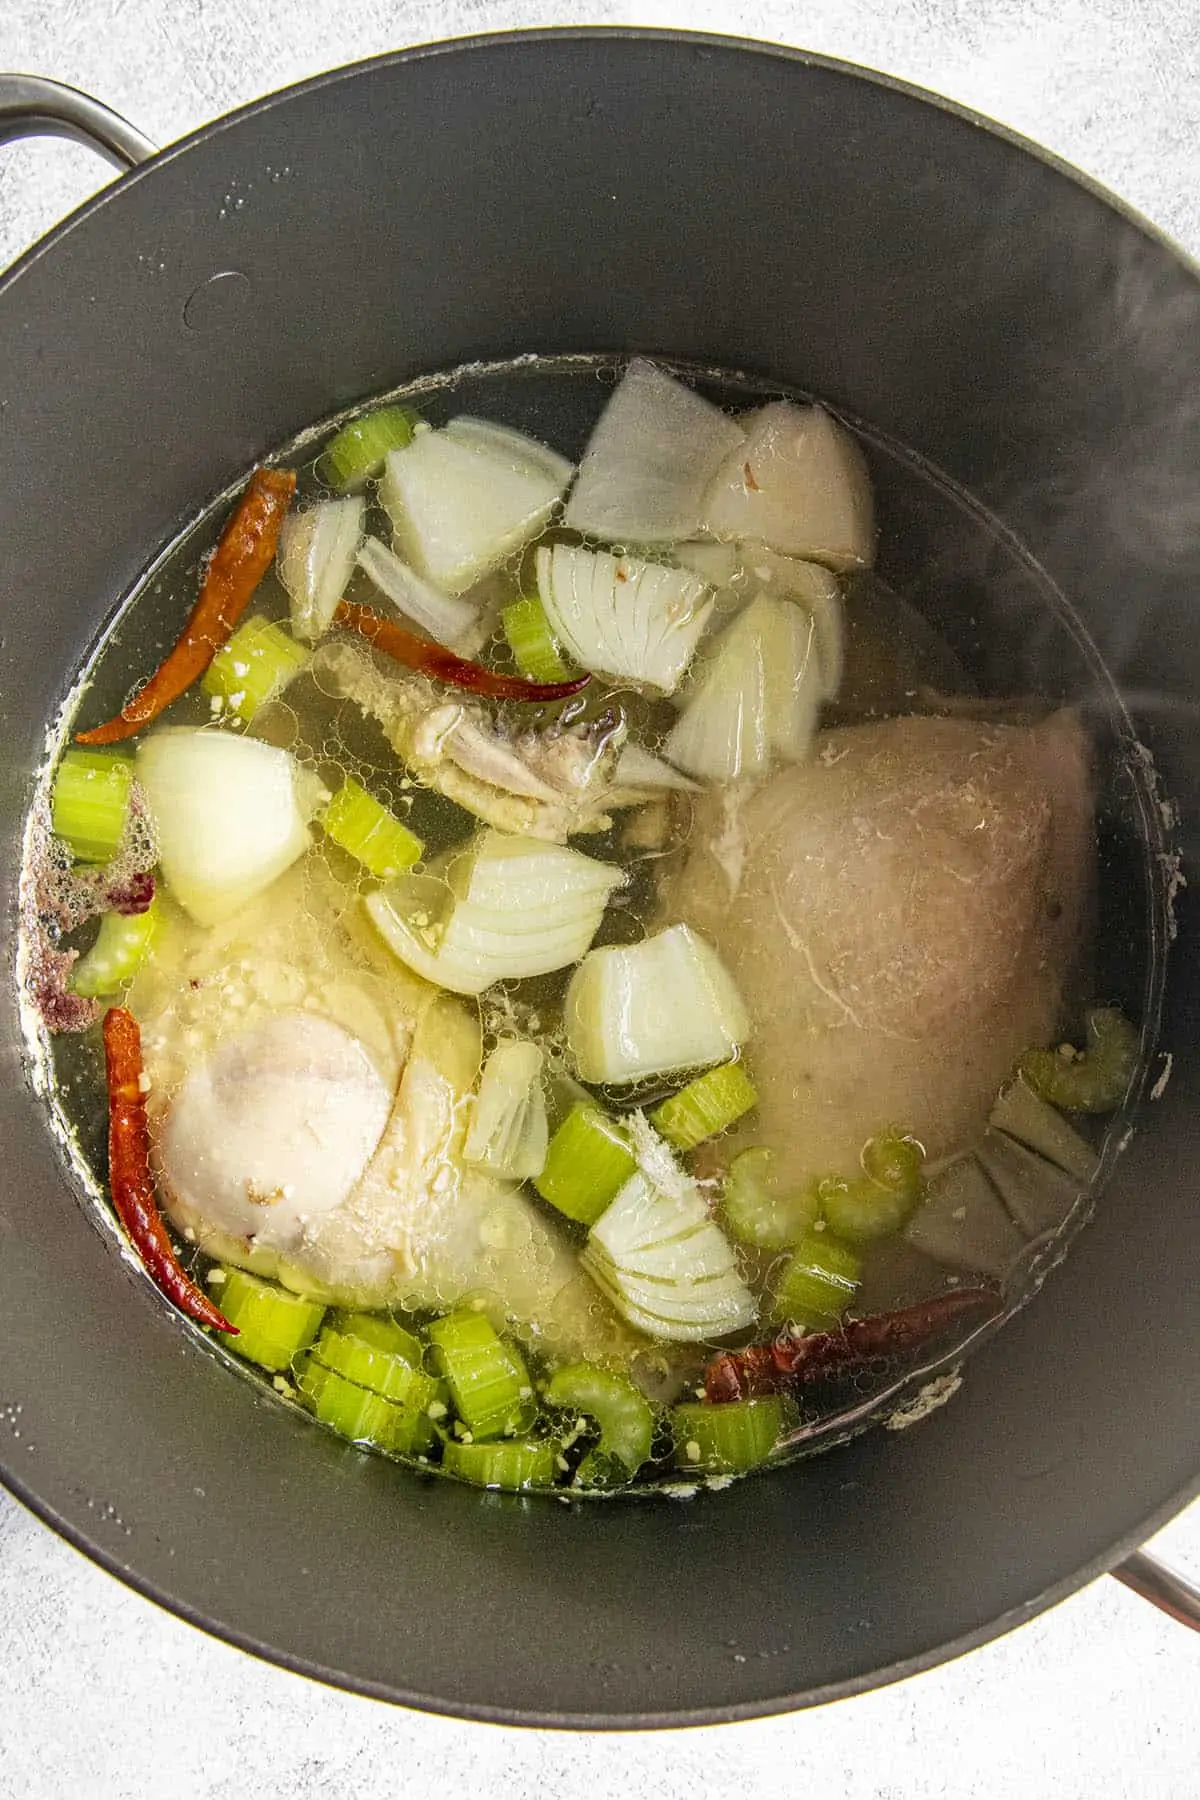 Simmering chicken and vegetables in a pot to make caldo de pollo